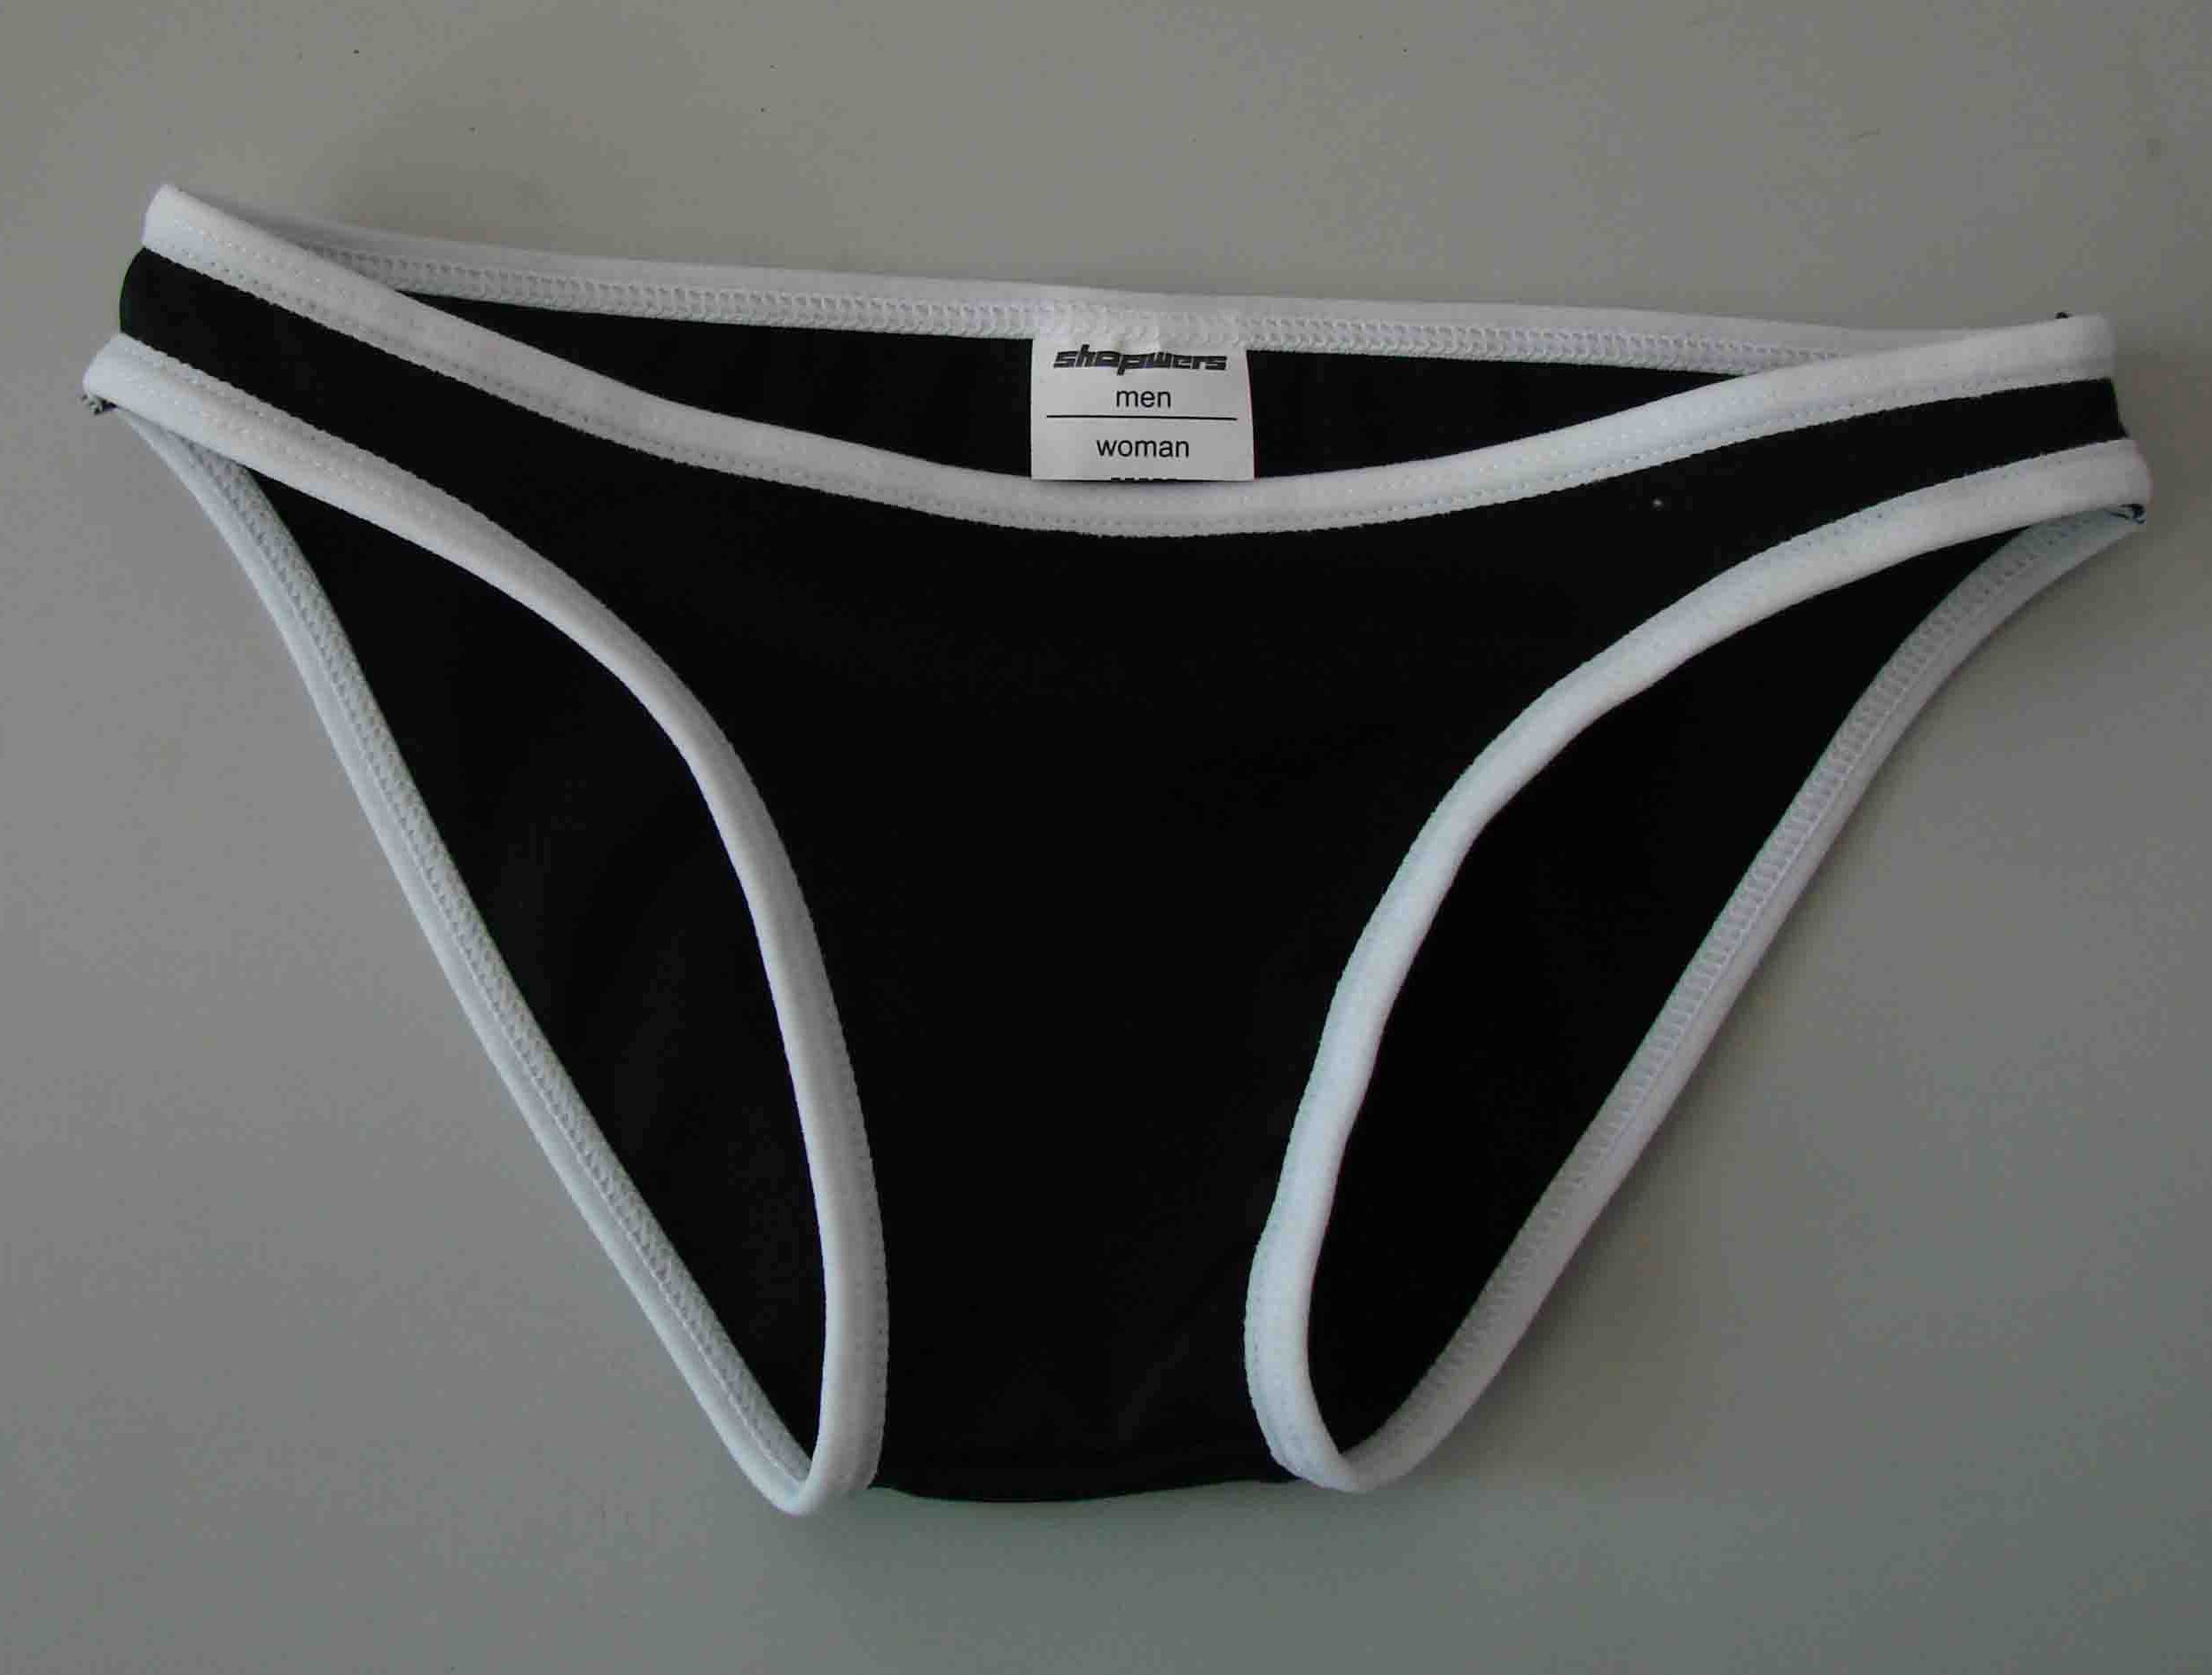 shopwers (unisex underwear)